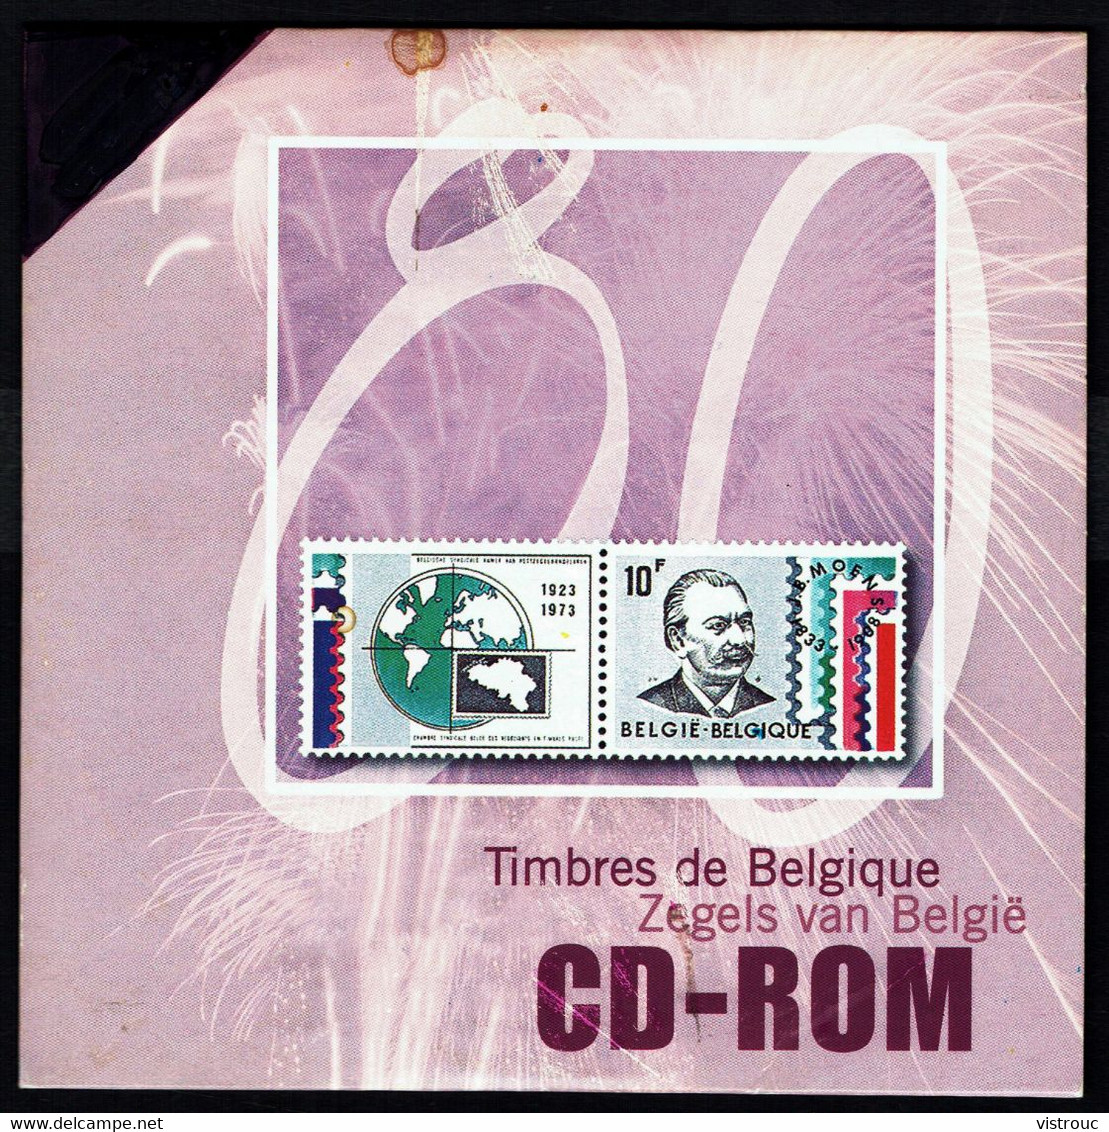 CD ROM "TIMBRES DE BELGIQUE". - Frans